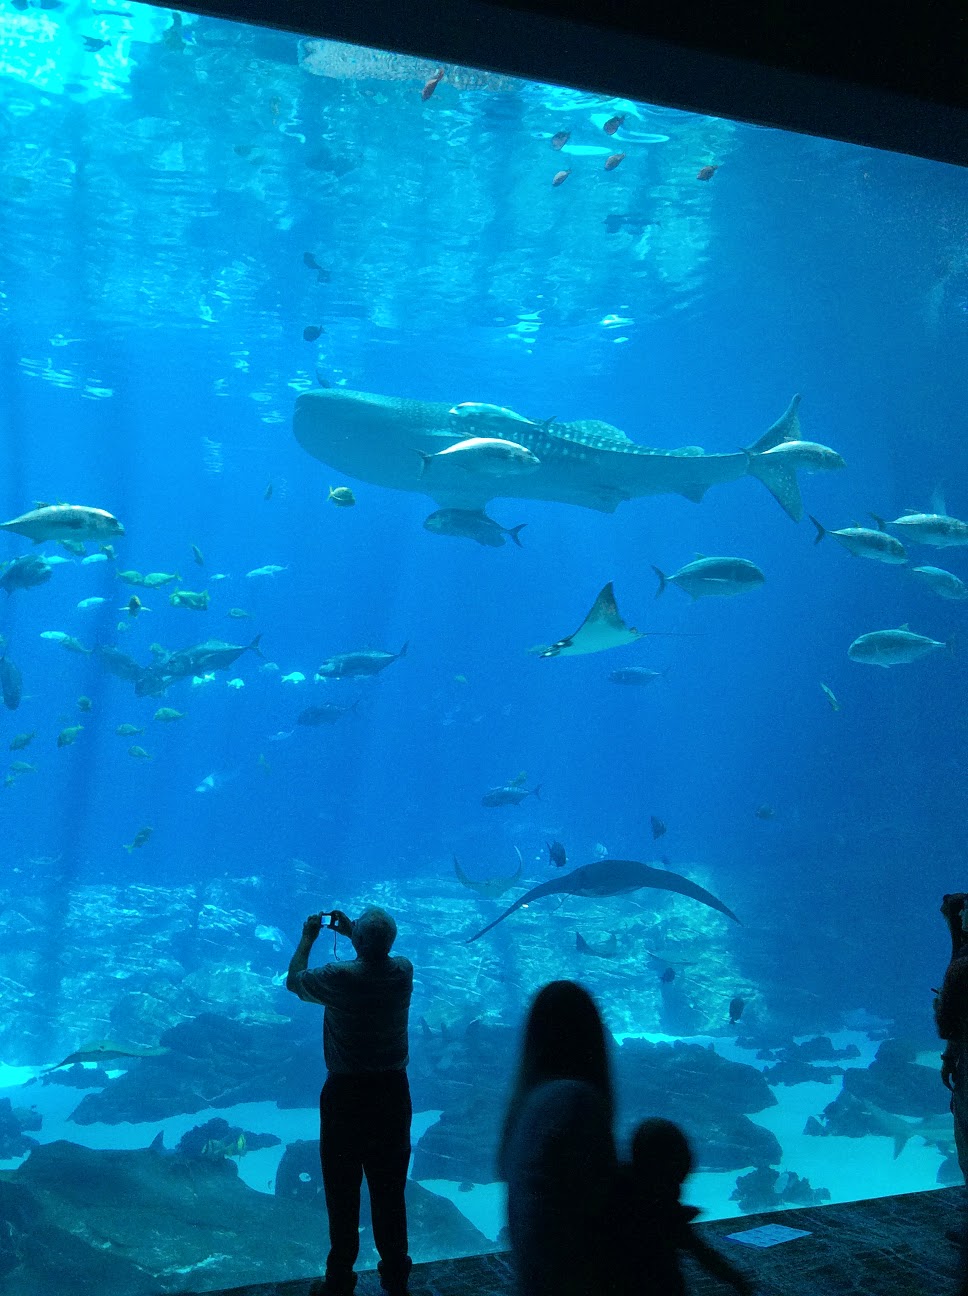 スタンプカードが好きなんですっ じっくりとジンベイザメの4匹の姿を楽しめる巨大水槽 アトランタ ジョージア水族館 Georgia Aquarium を管理人がもう一度訪れたいと考える最大の理由